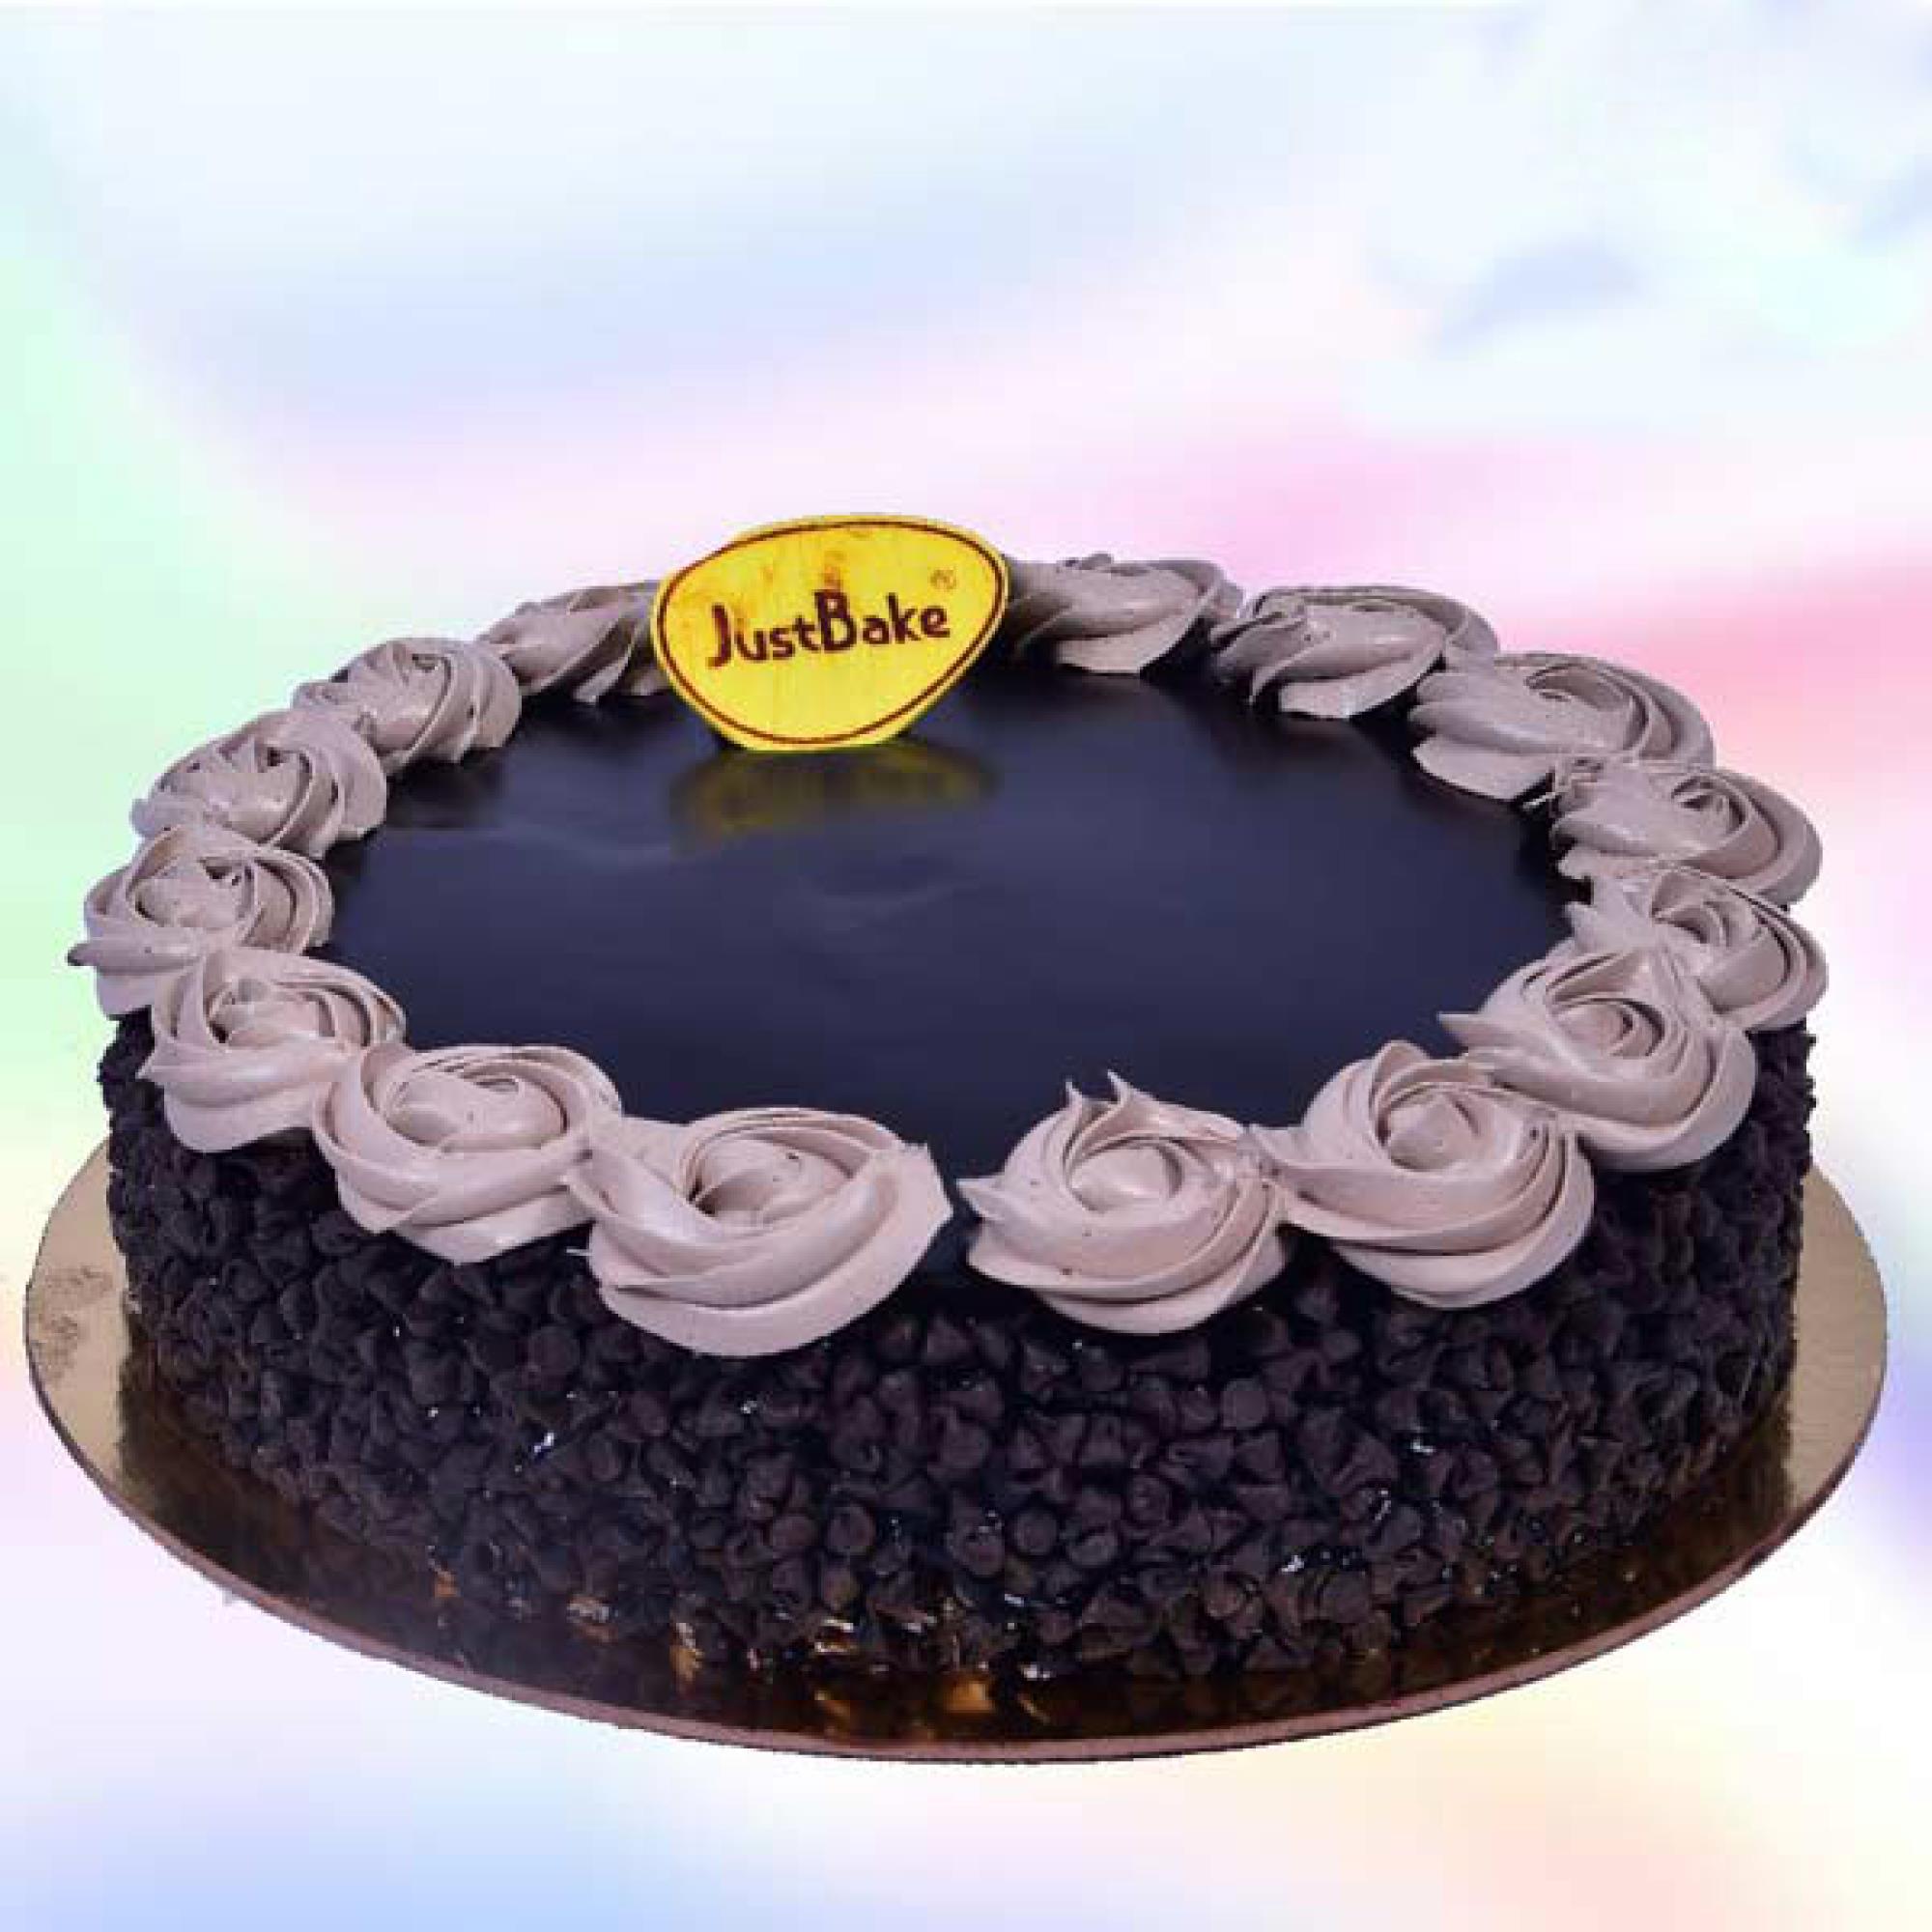 Share 140+ cake bliss vancho cake best - in.eteachers